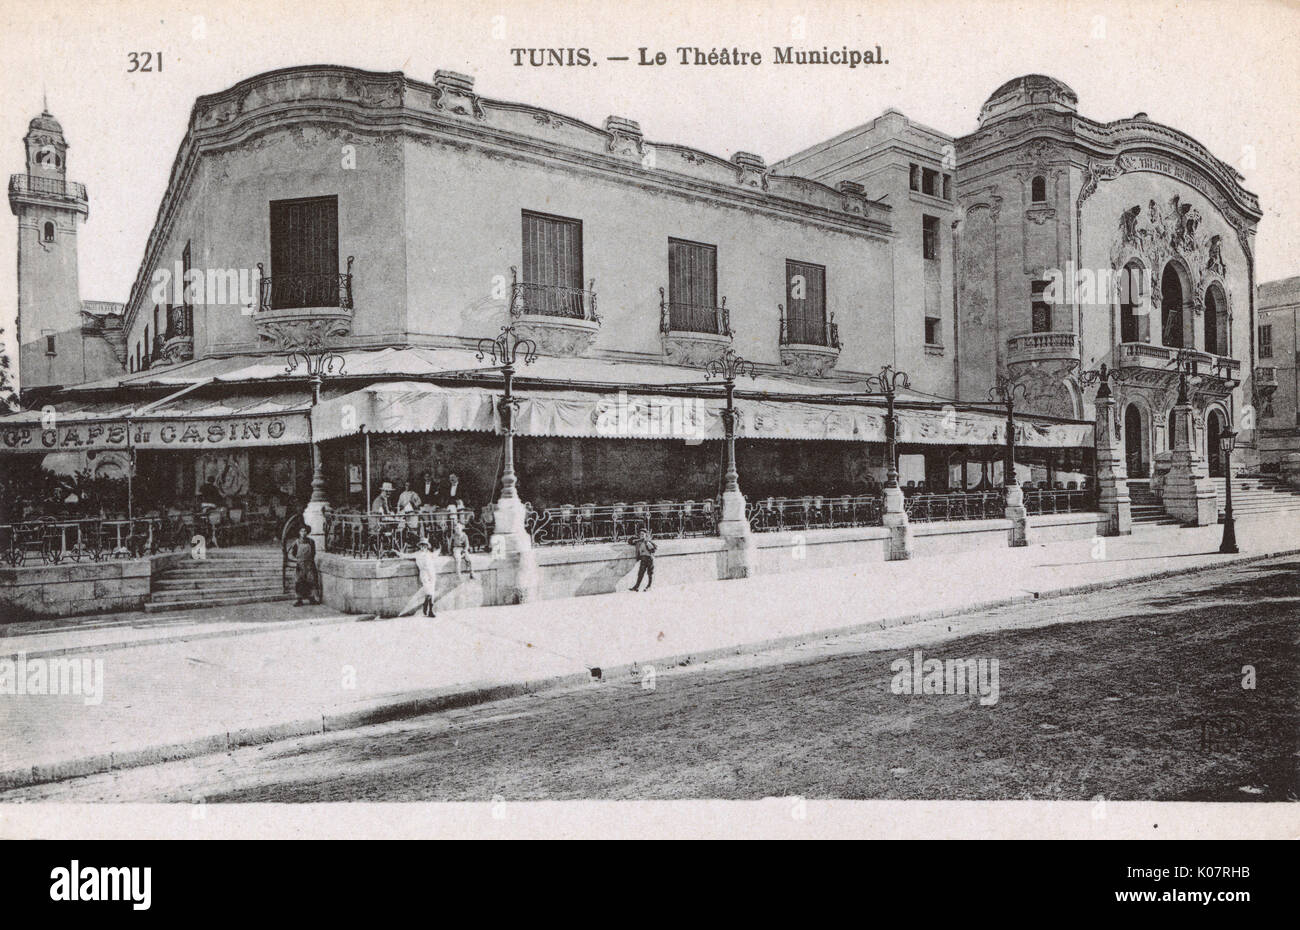 Teatro Comunale, Tunisi, Tunisia, Nord Africa, con il Grand Cafe du Casino sulla sinistra. Data: circa 1910 Foto Stock